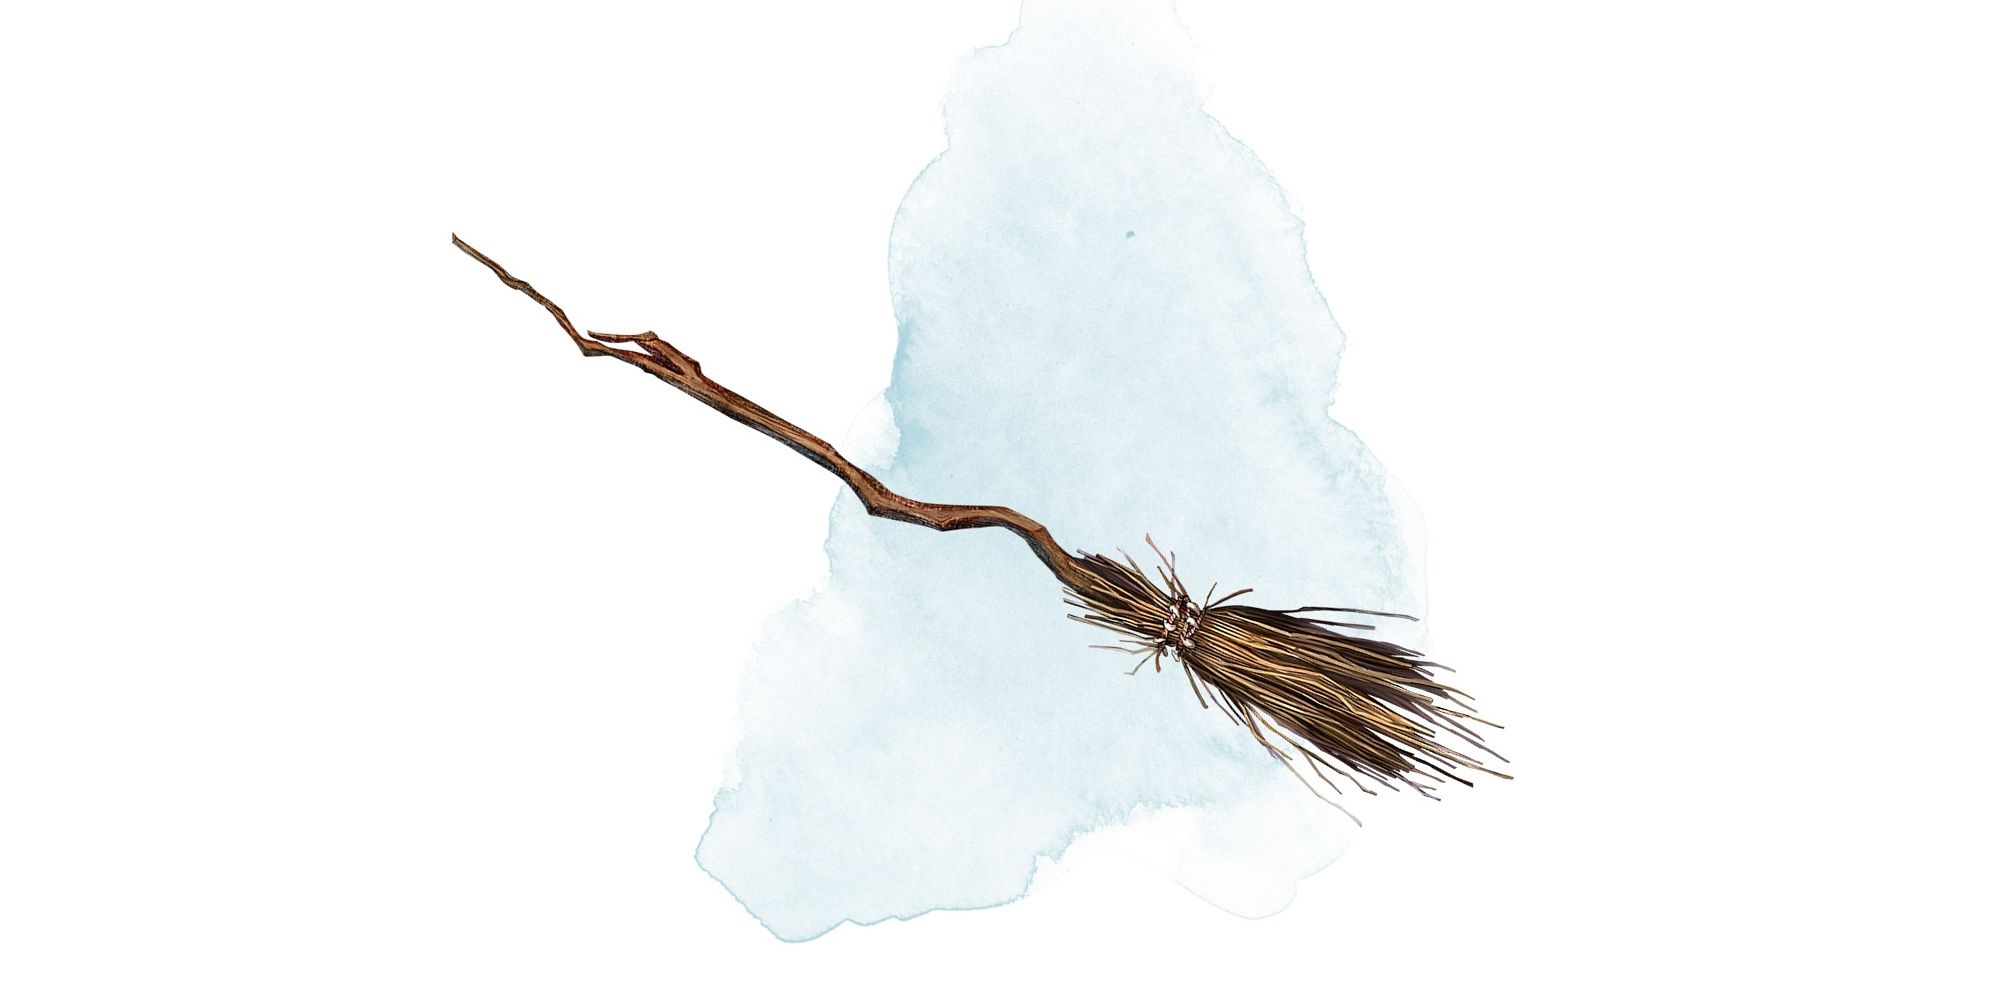 DnD Broom of Flying, uma vassoura de madeira com cabo de galho irregular.